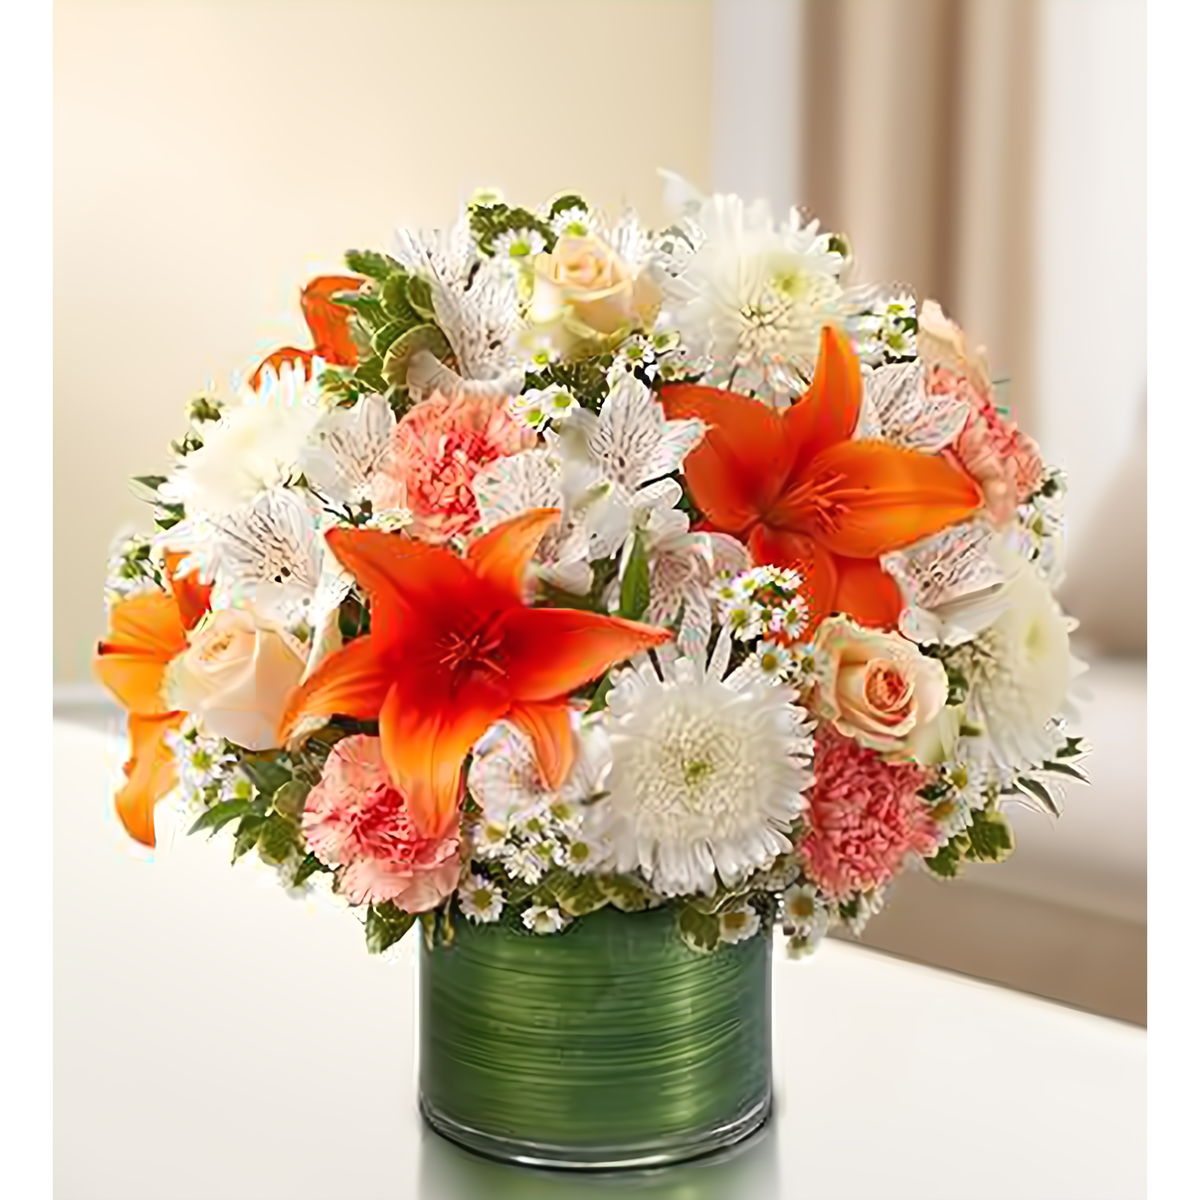 Manhattan Flower Delivery - Cherished Memories - Peach, Orange and White - Funeral &gt; Vase Arrangements